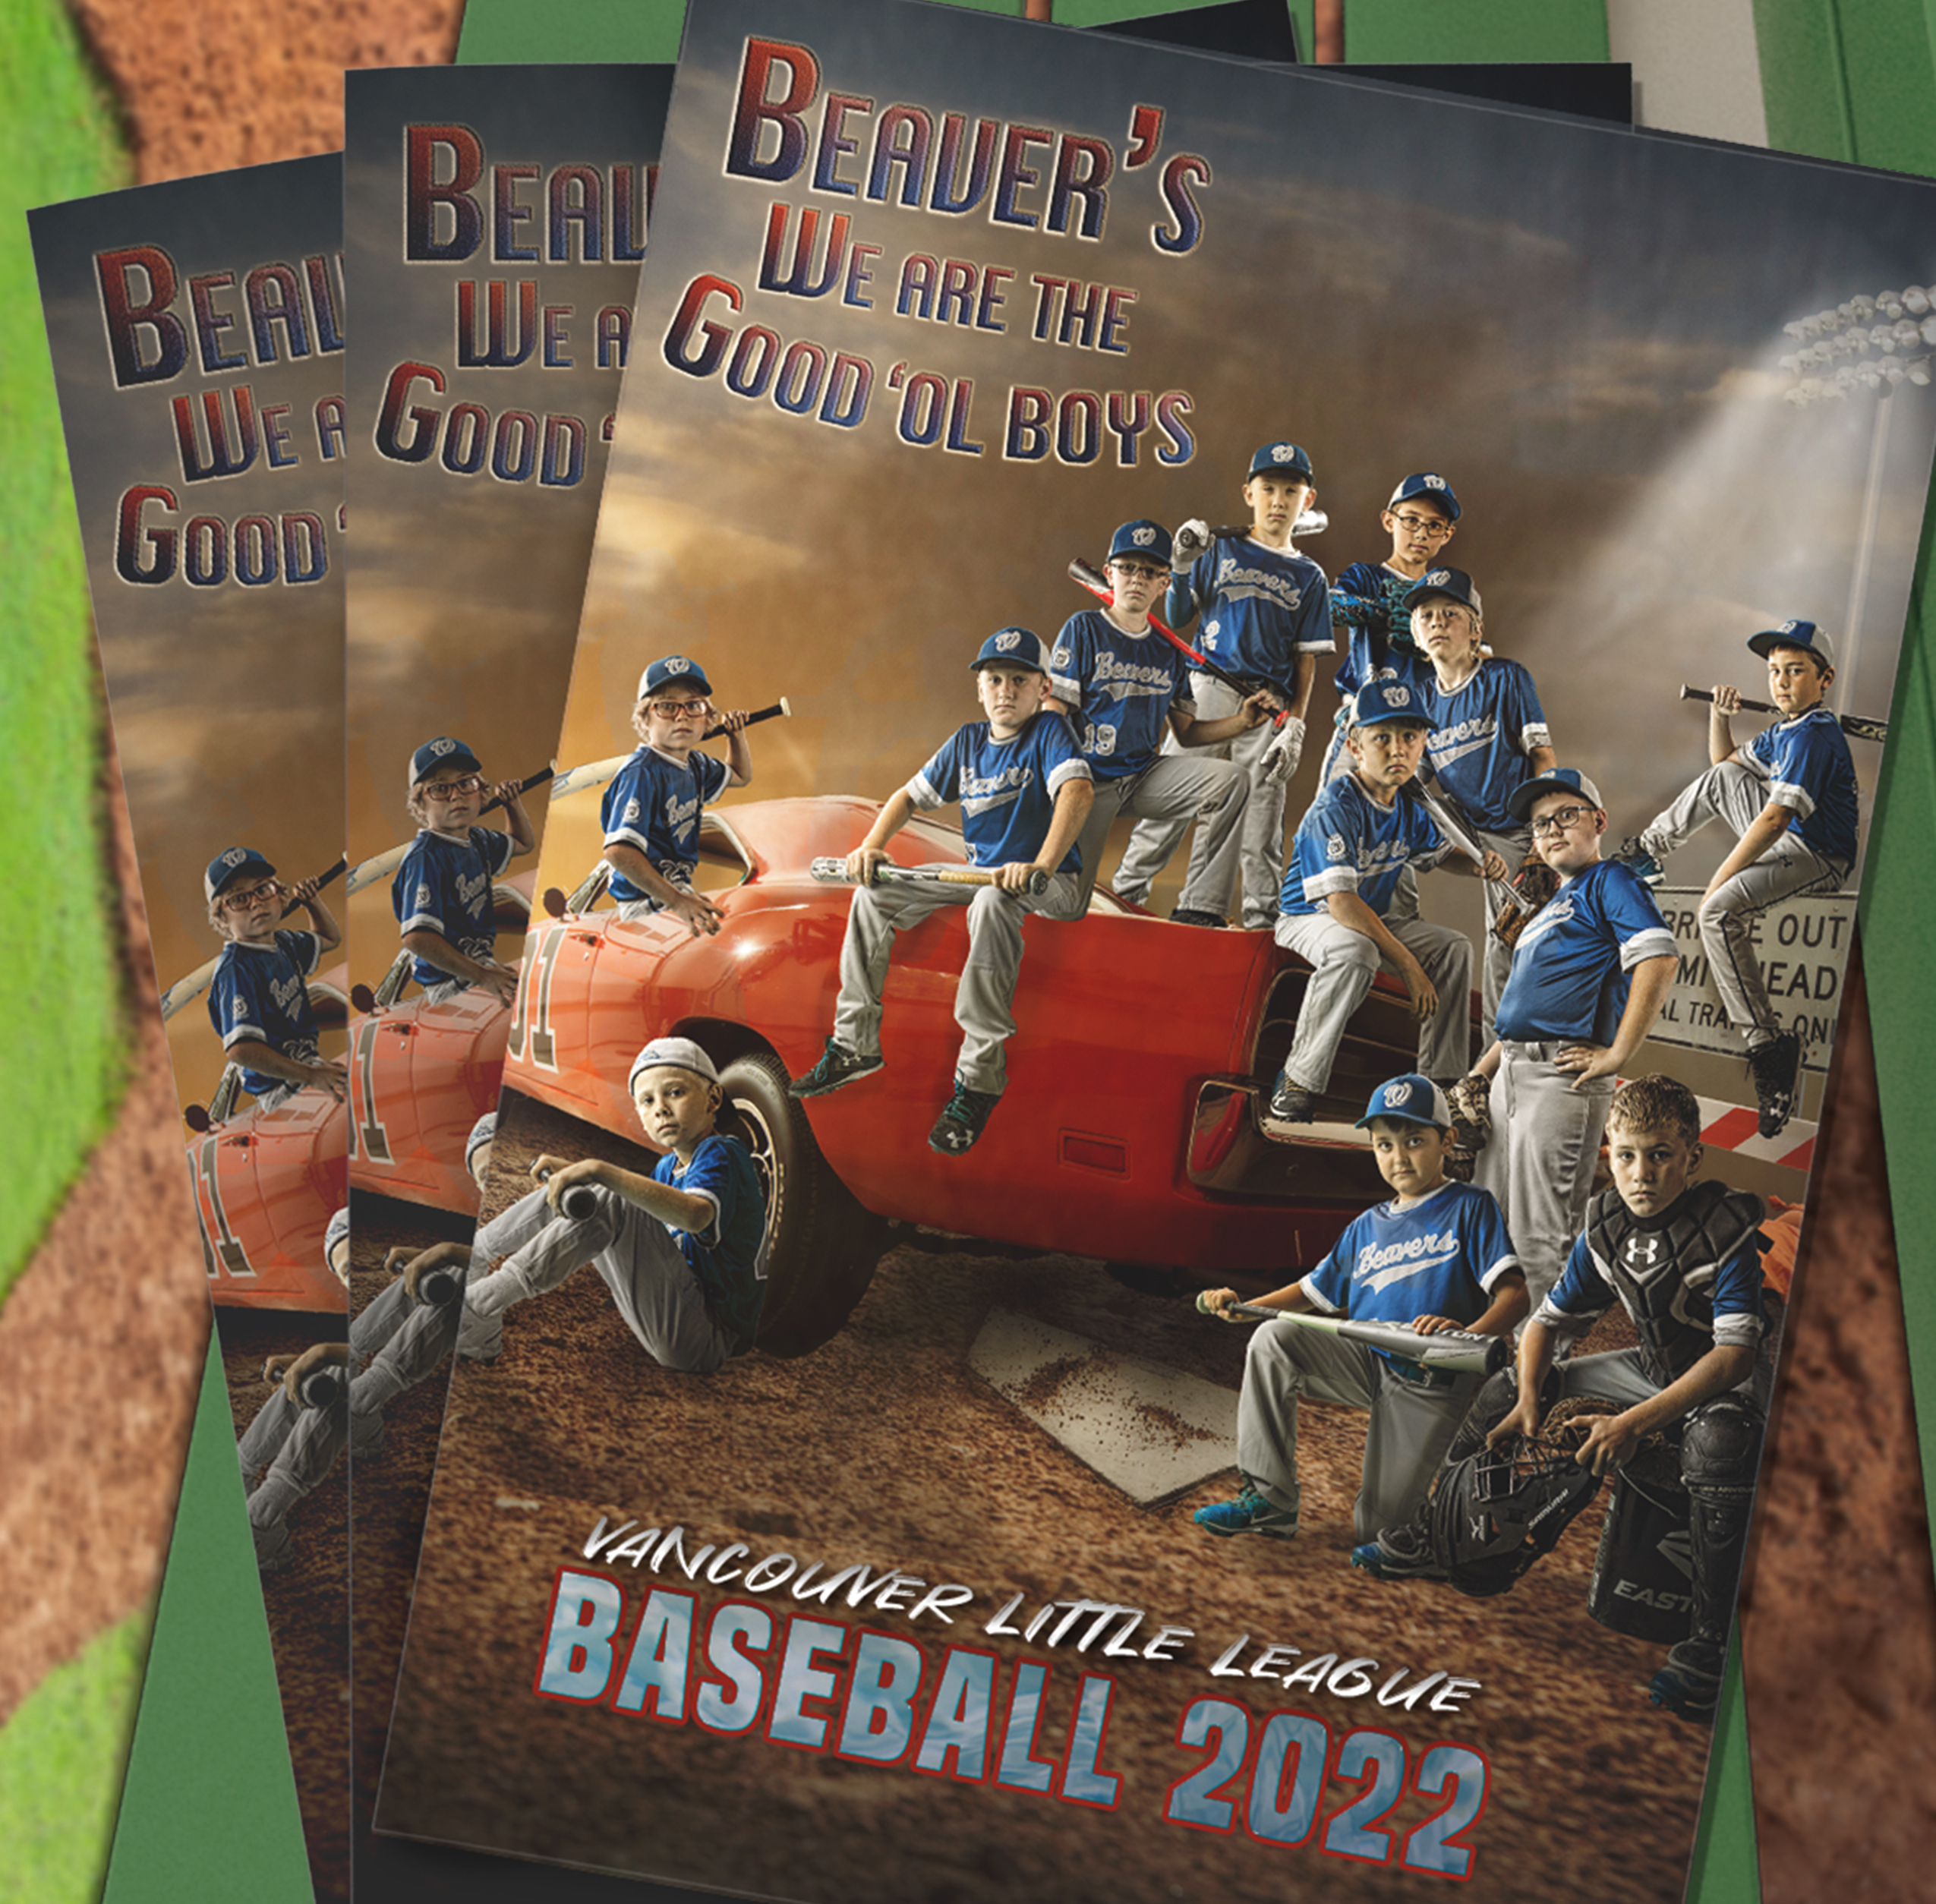 Program/Media Guide for Beavers Youth Baseball